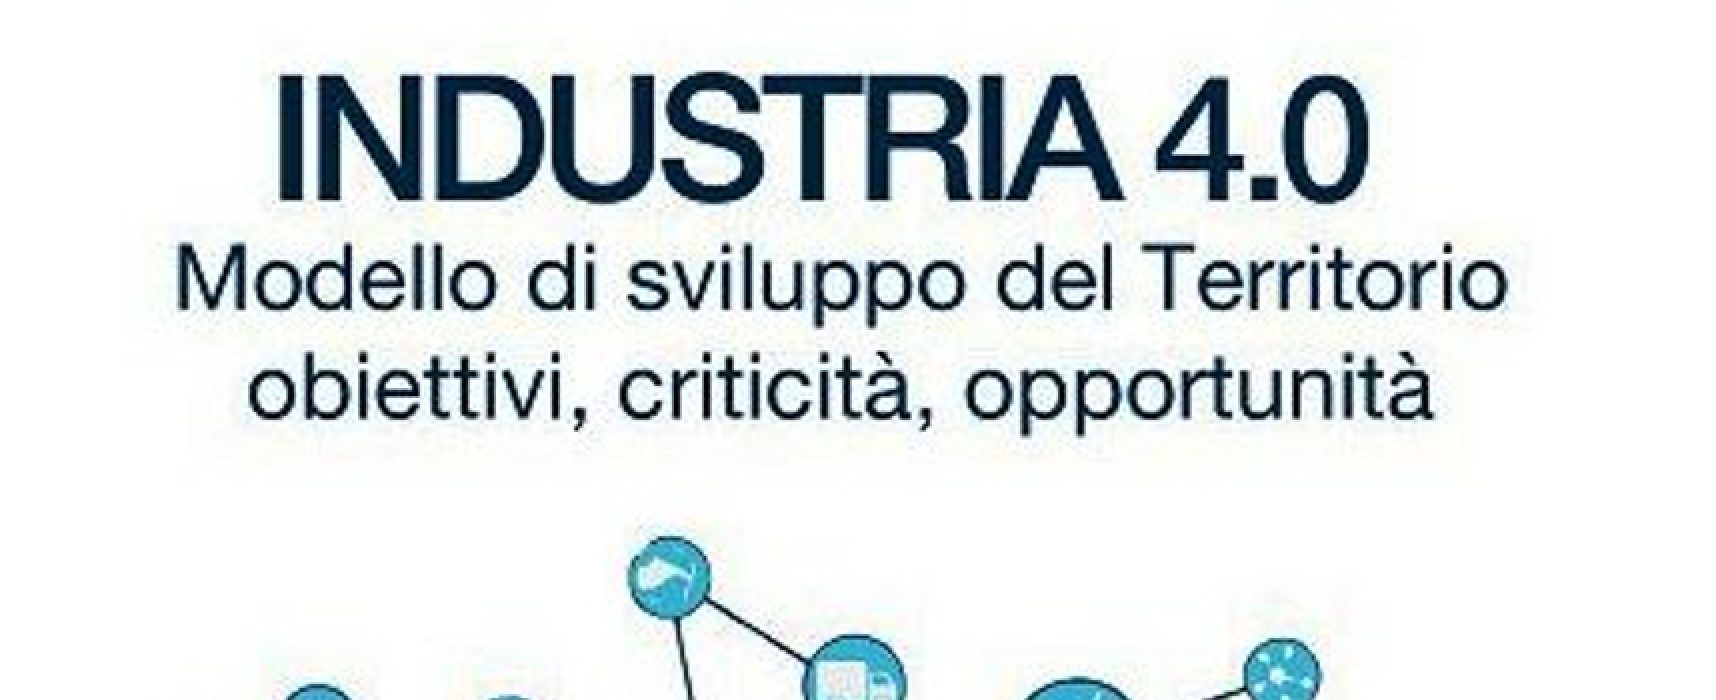 Rotary: oggi convegno su sviluppo modello “Industry 4.0” con la presenza di Patroni Griffi